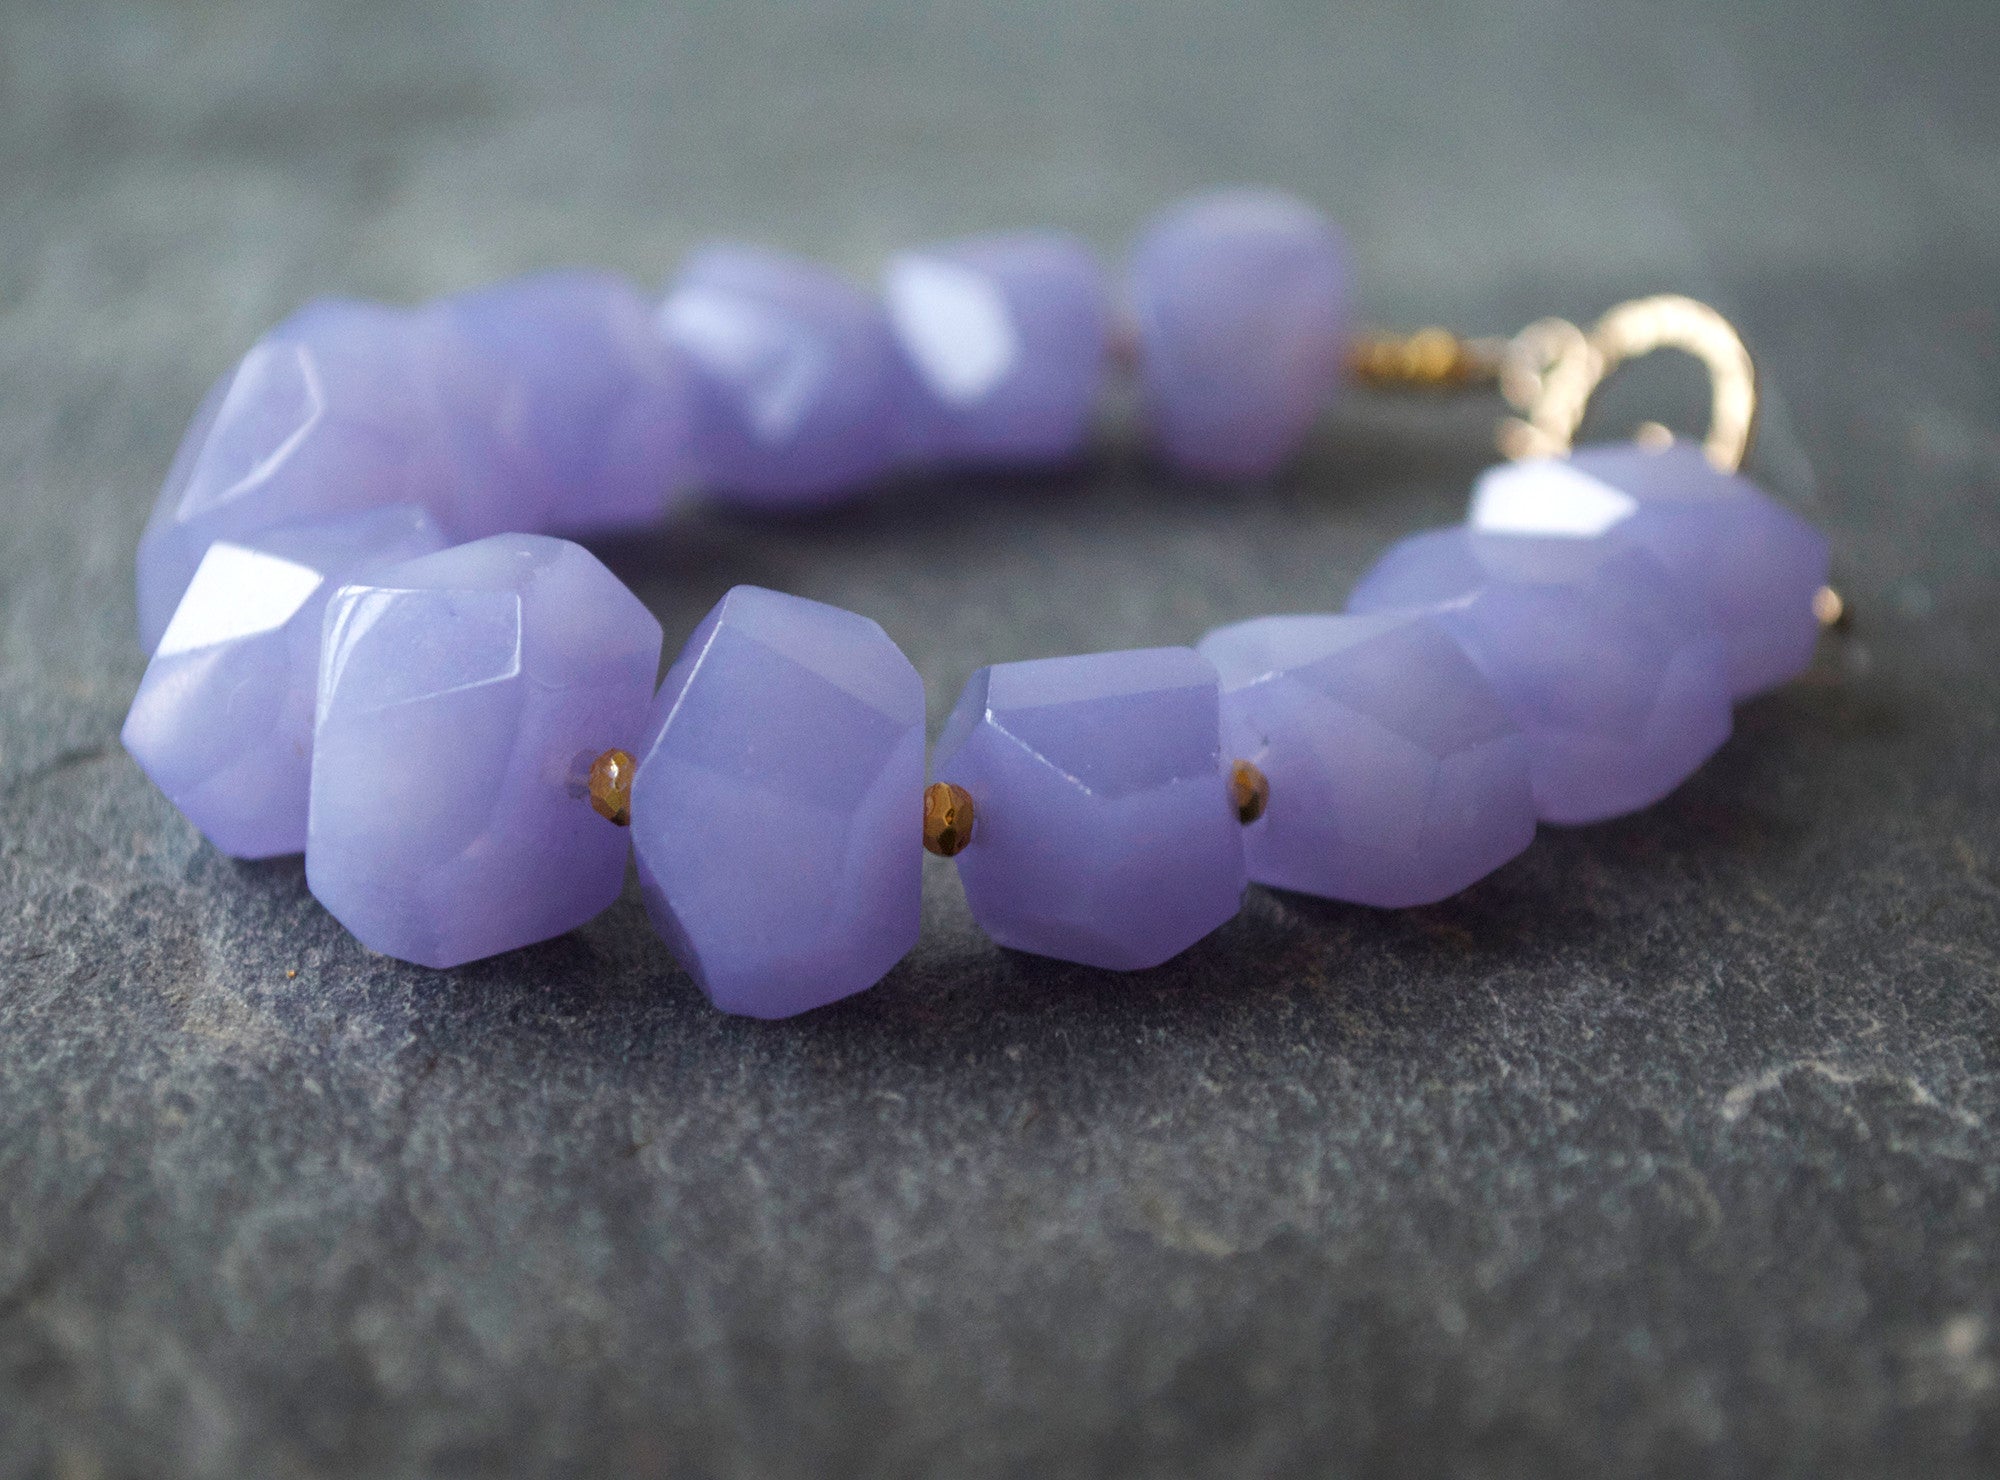 Lavender Bracelet